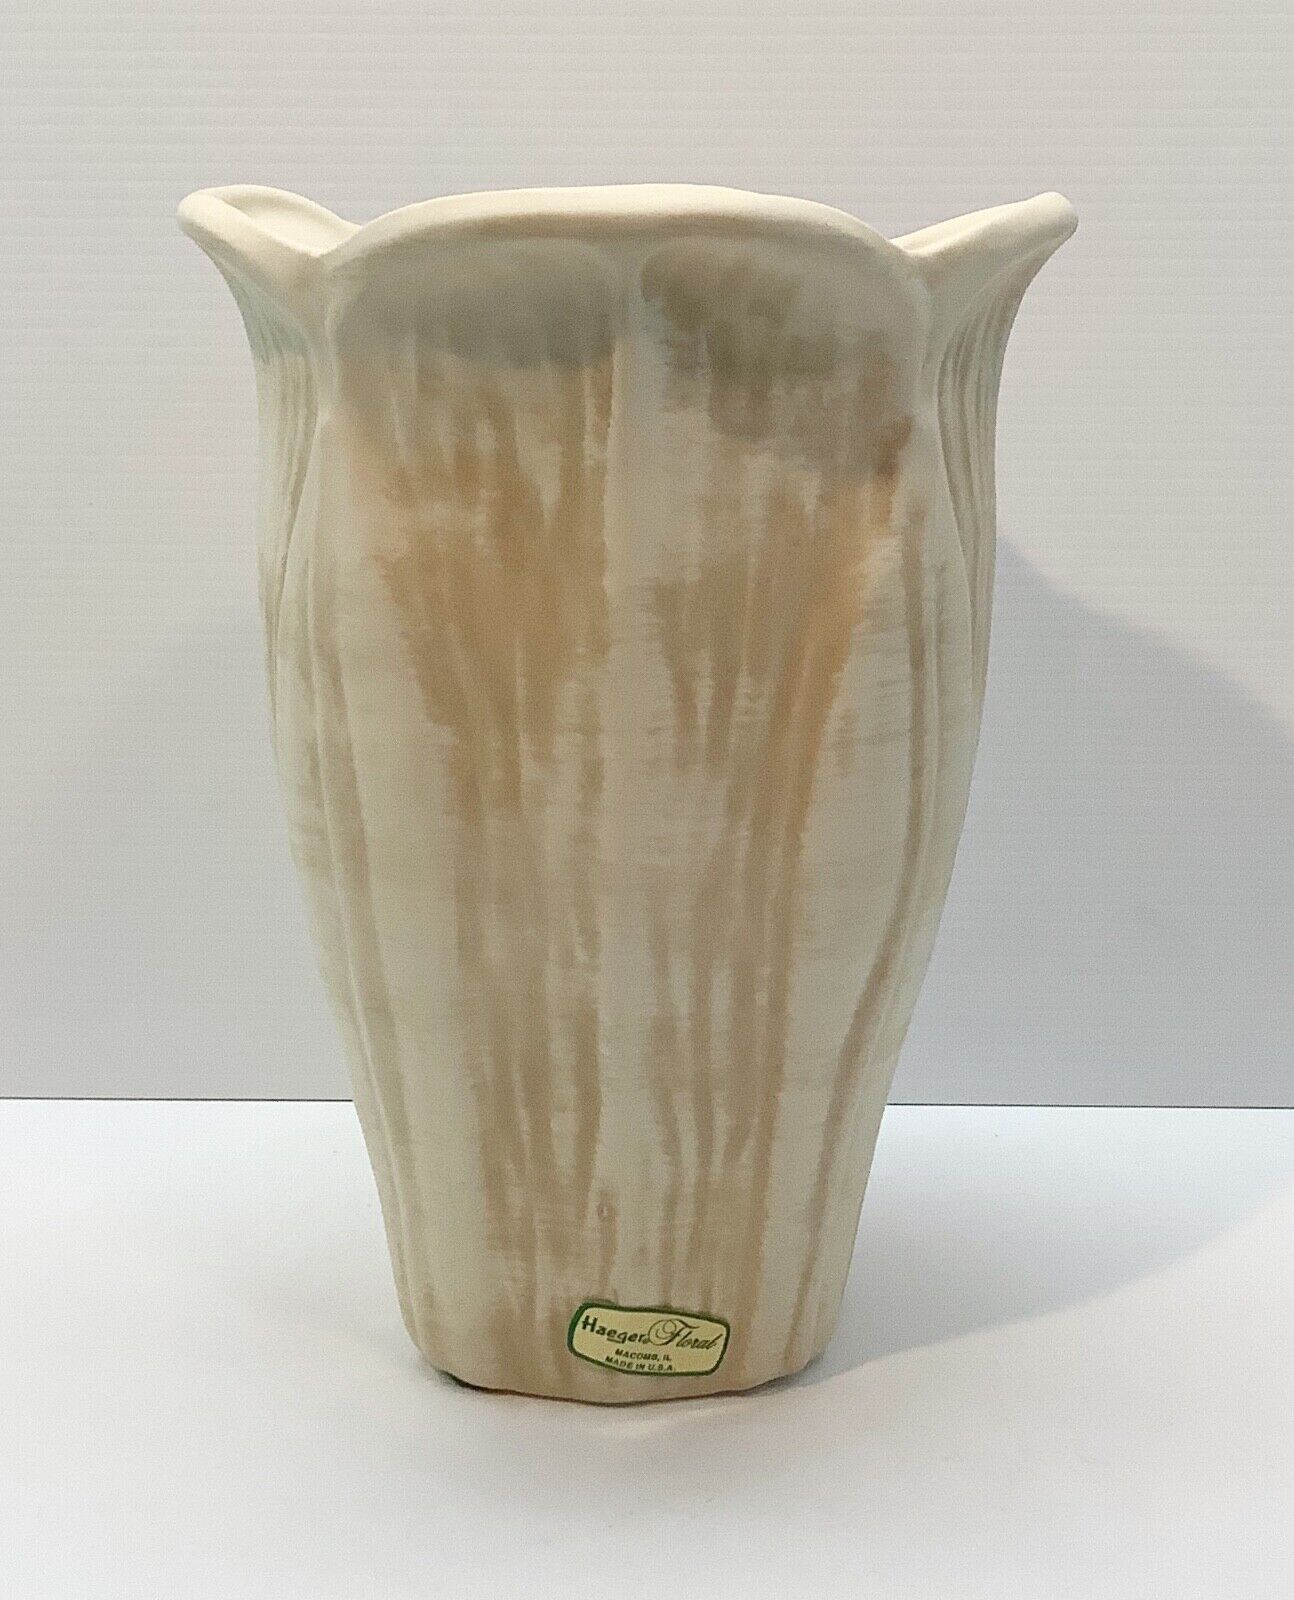 Haeger Floral Pottery 9” Neutral Tulip Shaped Leaf Pattern Vase Vintage